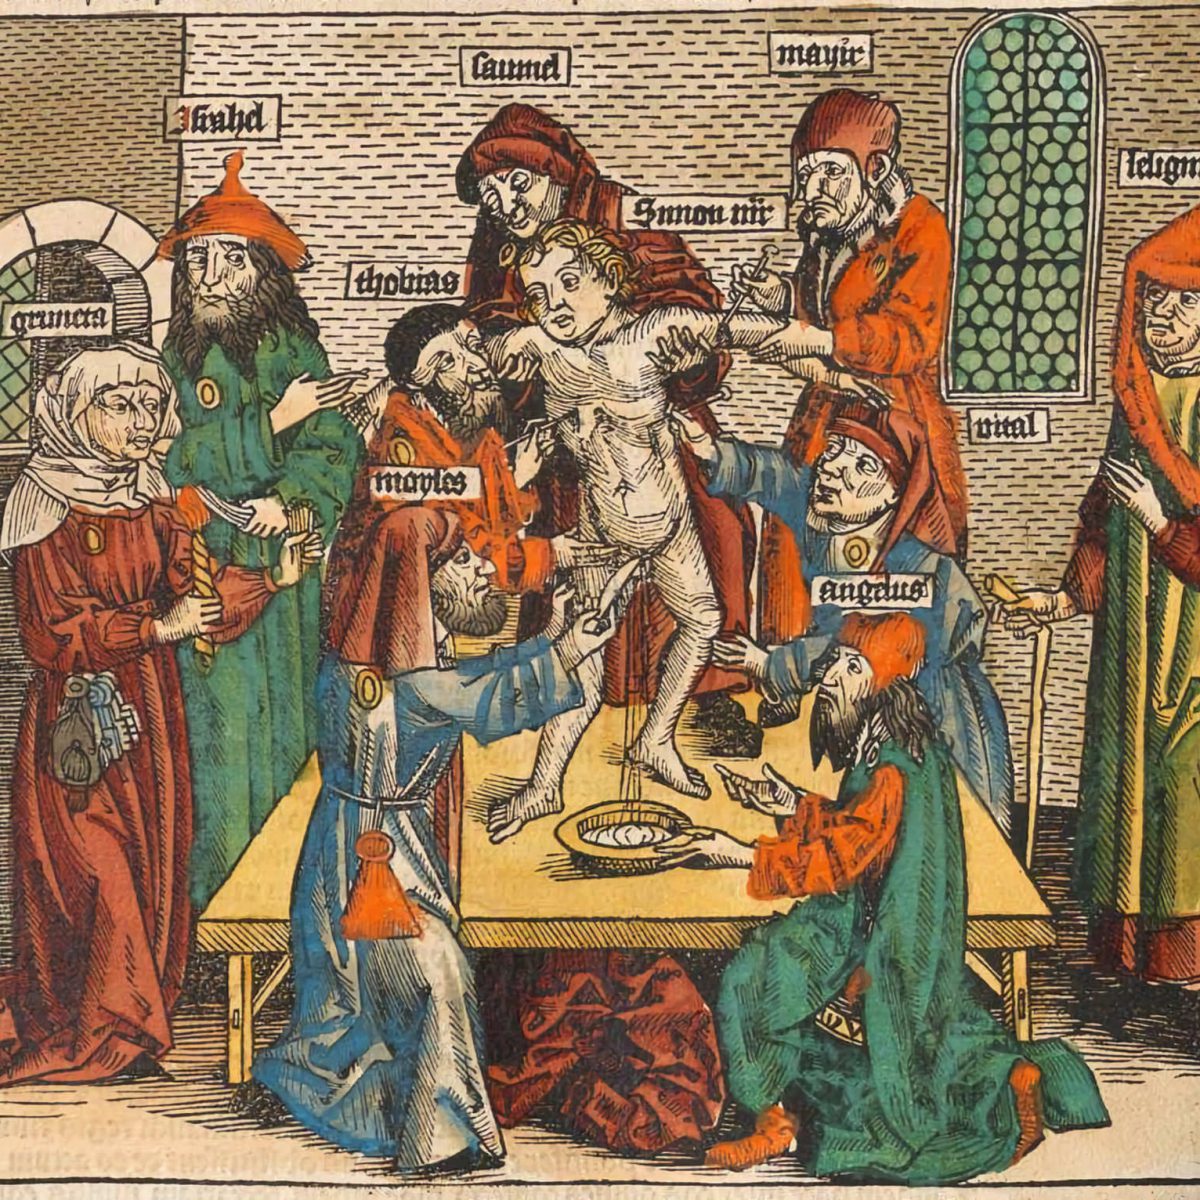 Mito: Los judíos utilizan sangre cristiana en sus rituales religiosos